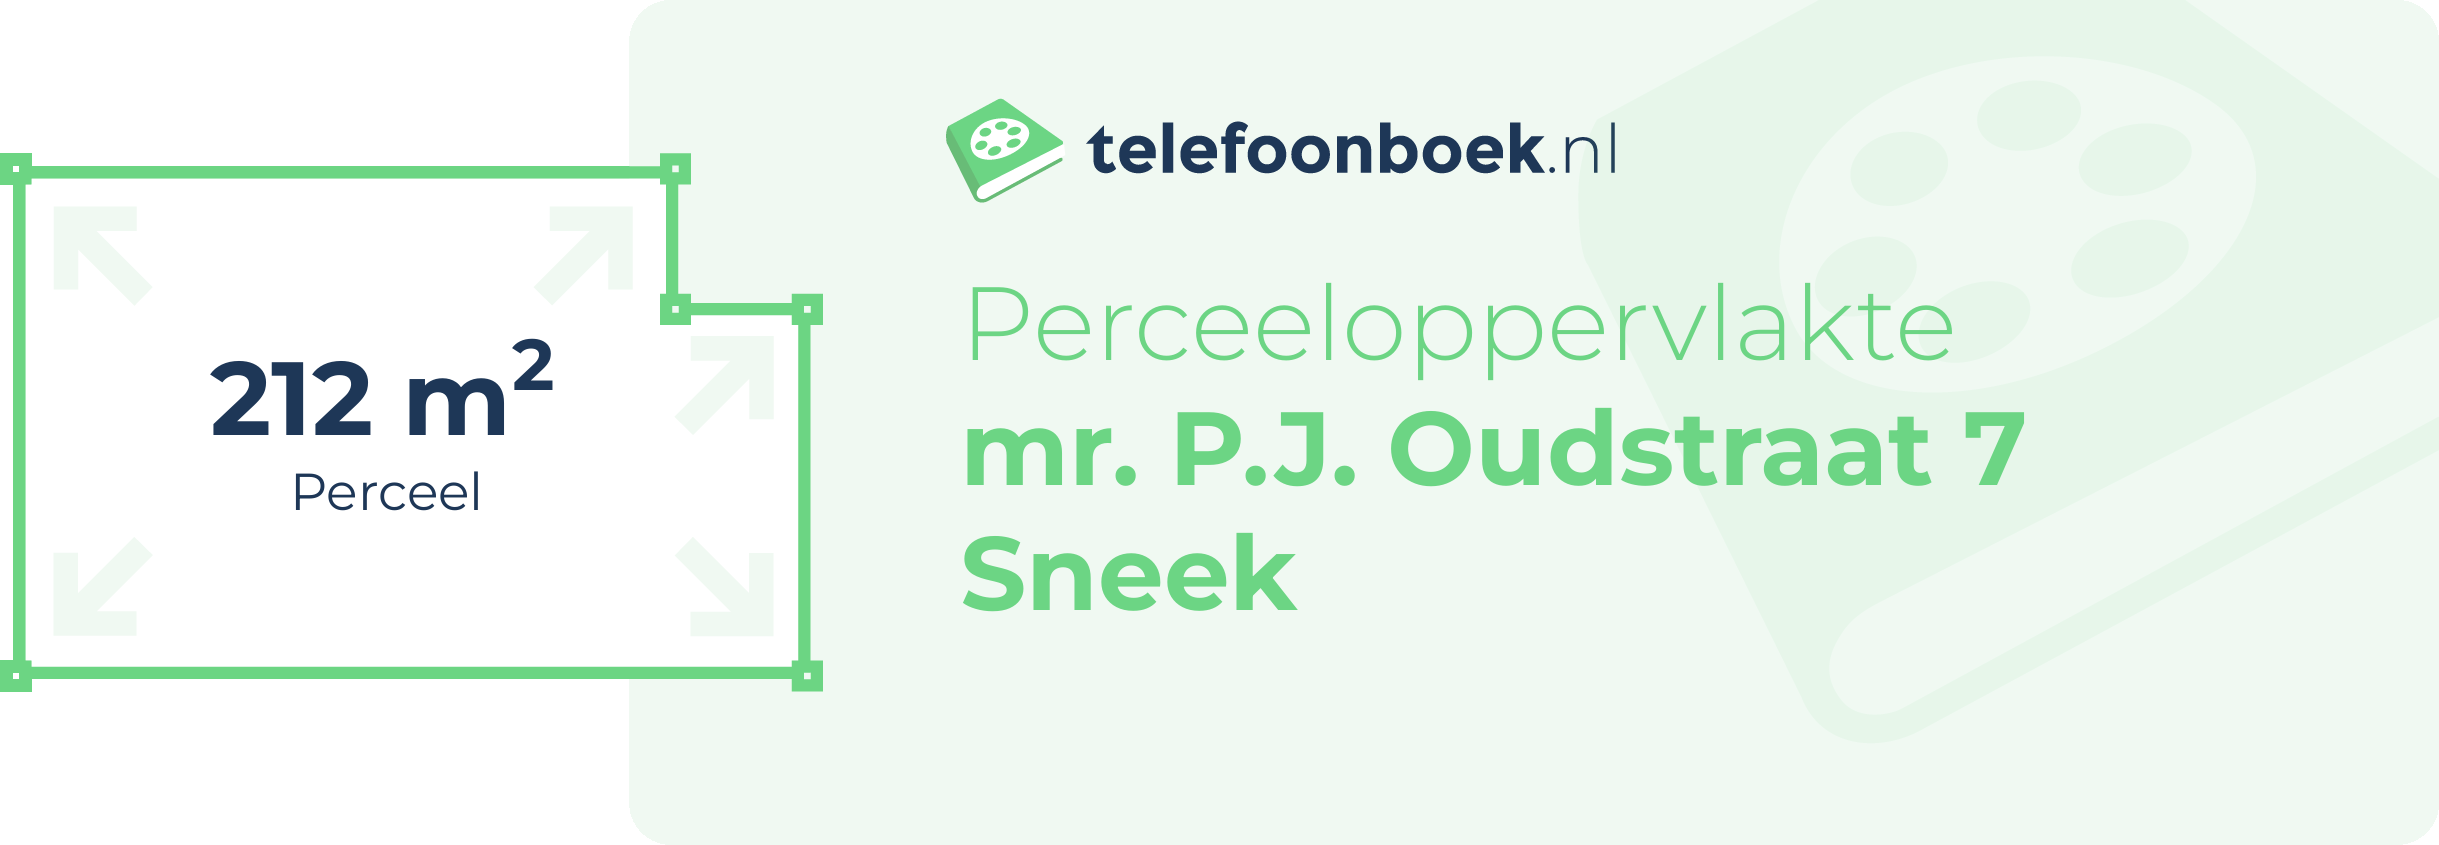 Perceeloppervlakte Mr. P.J. Oudstraat 7 Sneek